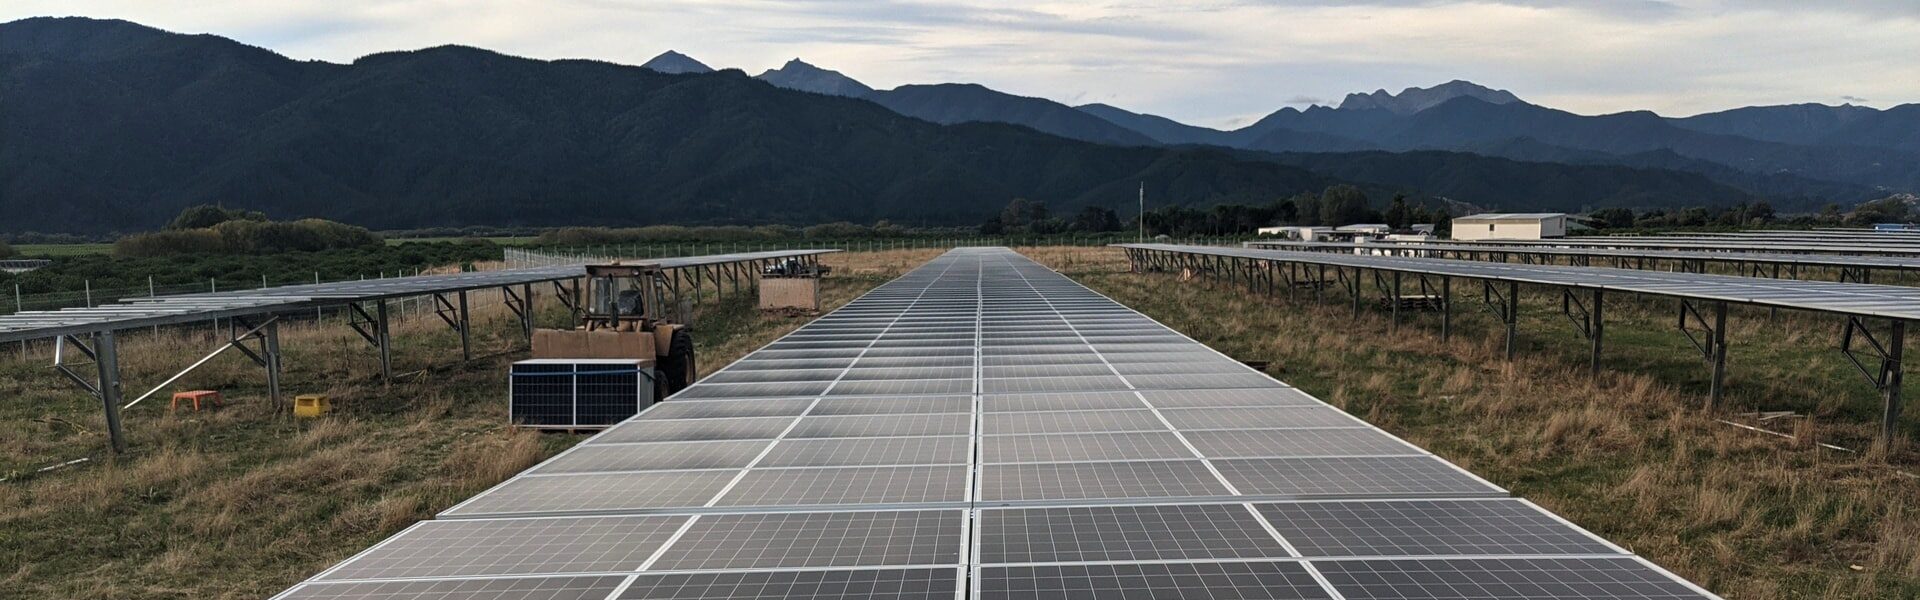 placa energia solar - Principais dúvidas sobre franquia de energia solar e suas respostas